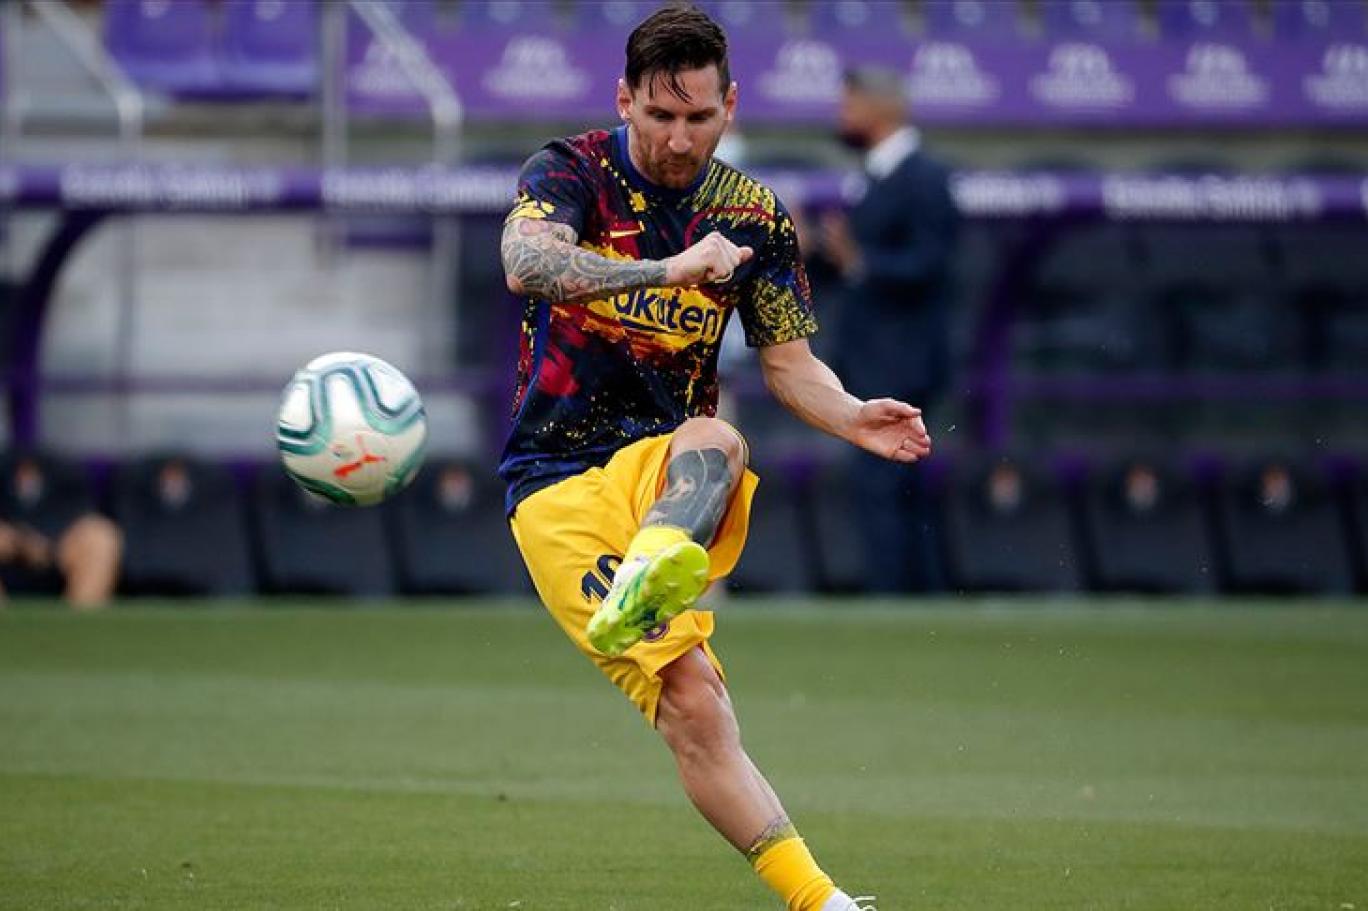 La Liga Başkanı Tebas dan Messi ye tavsiye